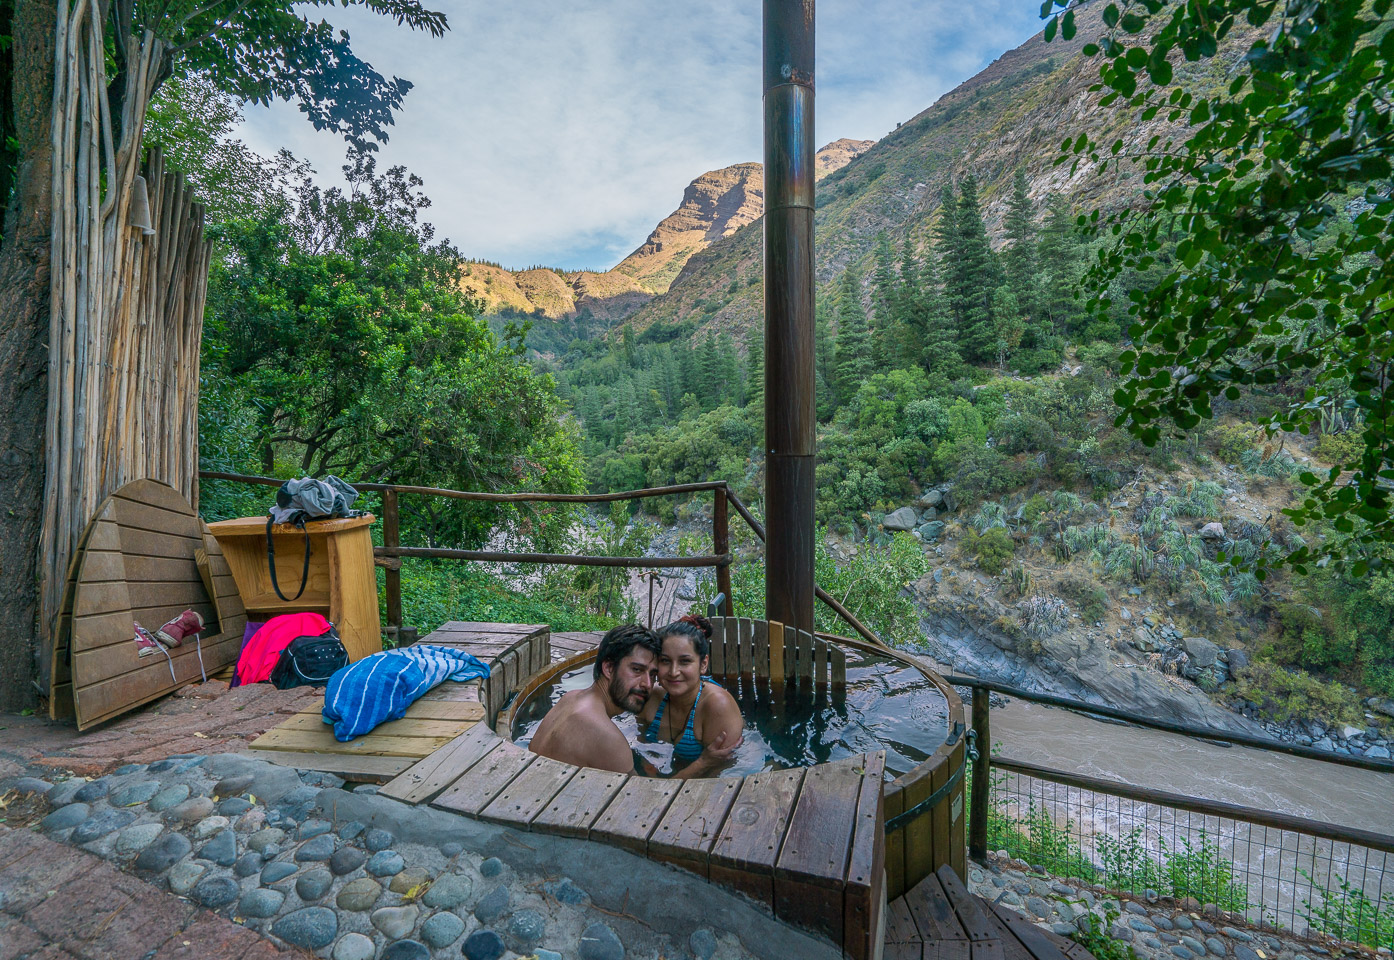 Camping verano vacaciones region cajon del maipo el sauce 7 tazas los puentes cascada de las animas 